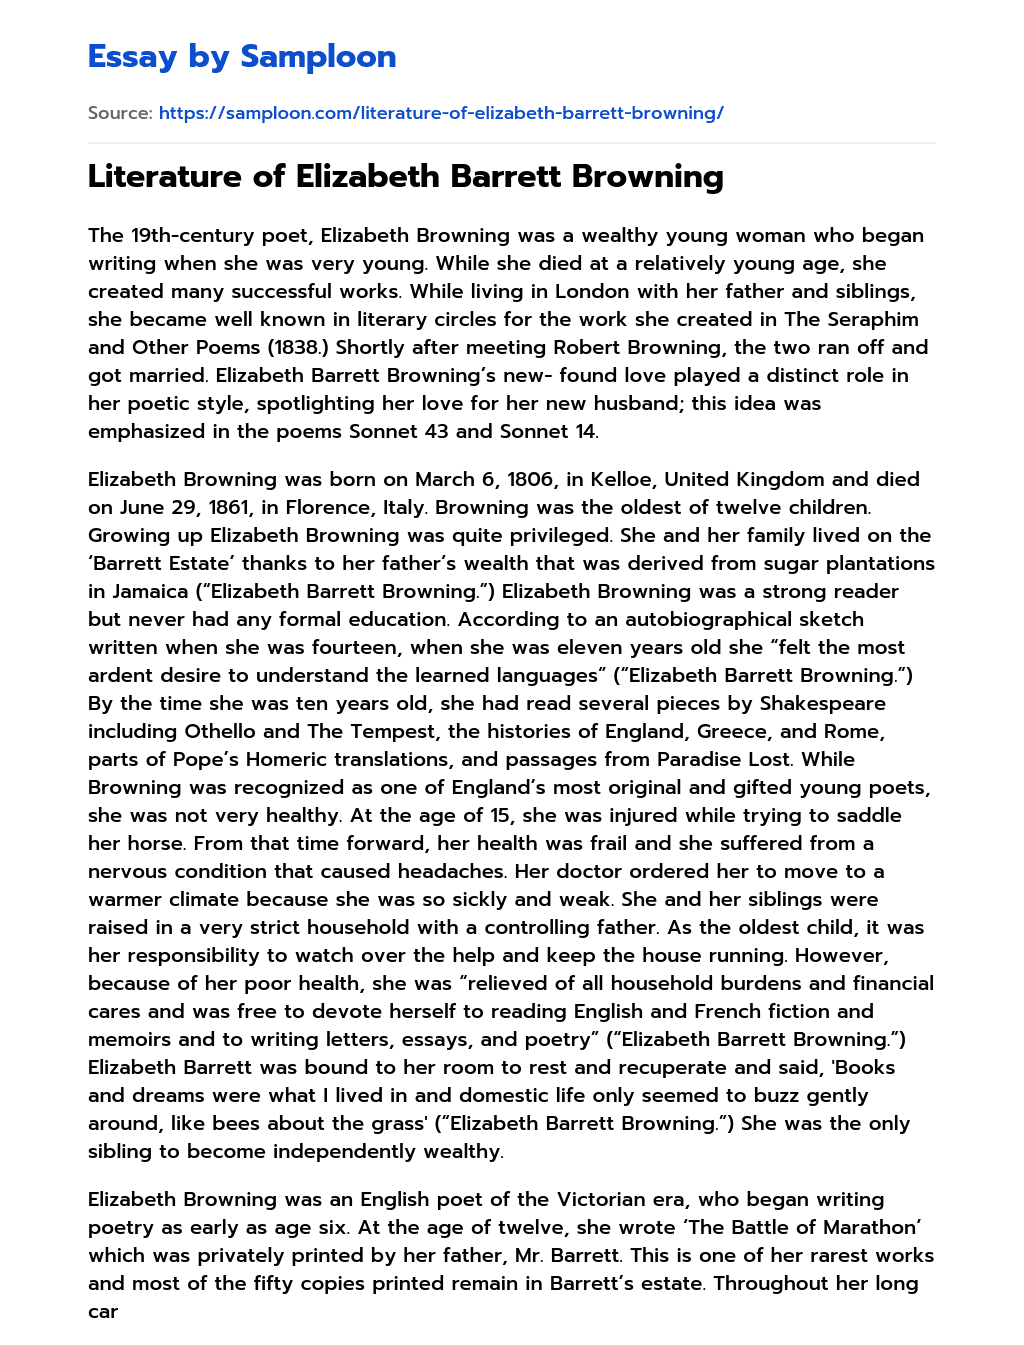 analytical essay about elizabeth barrett browning